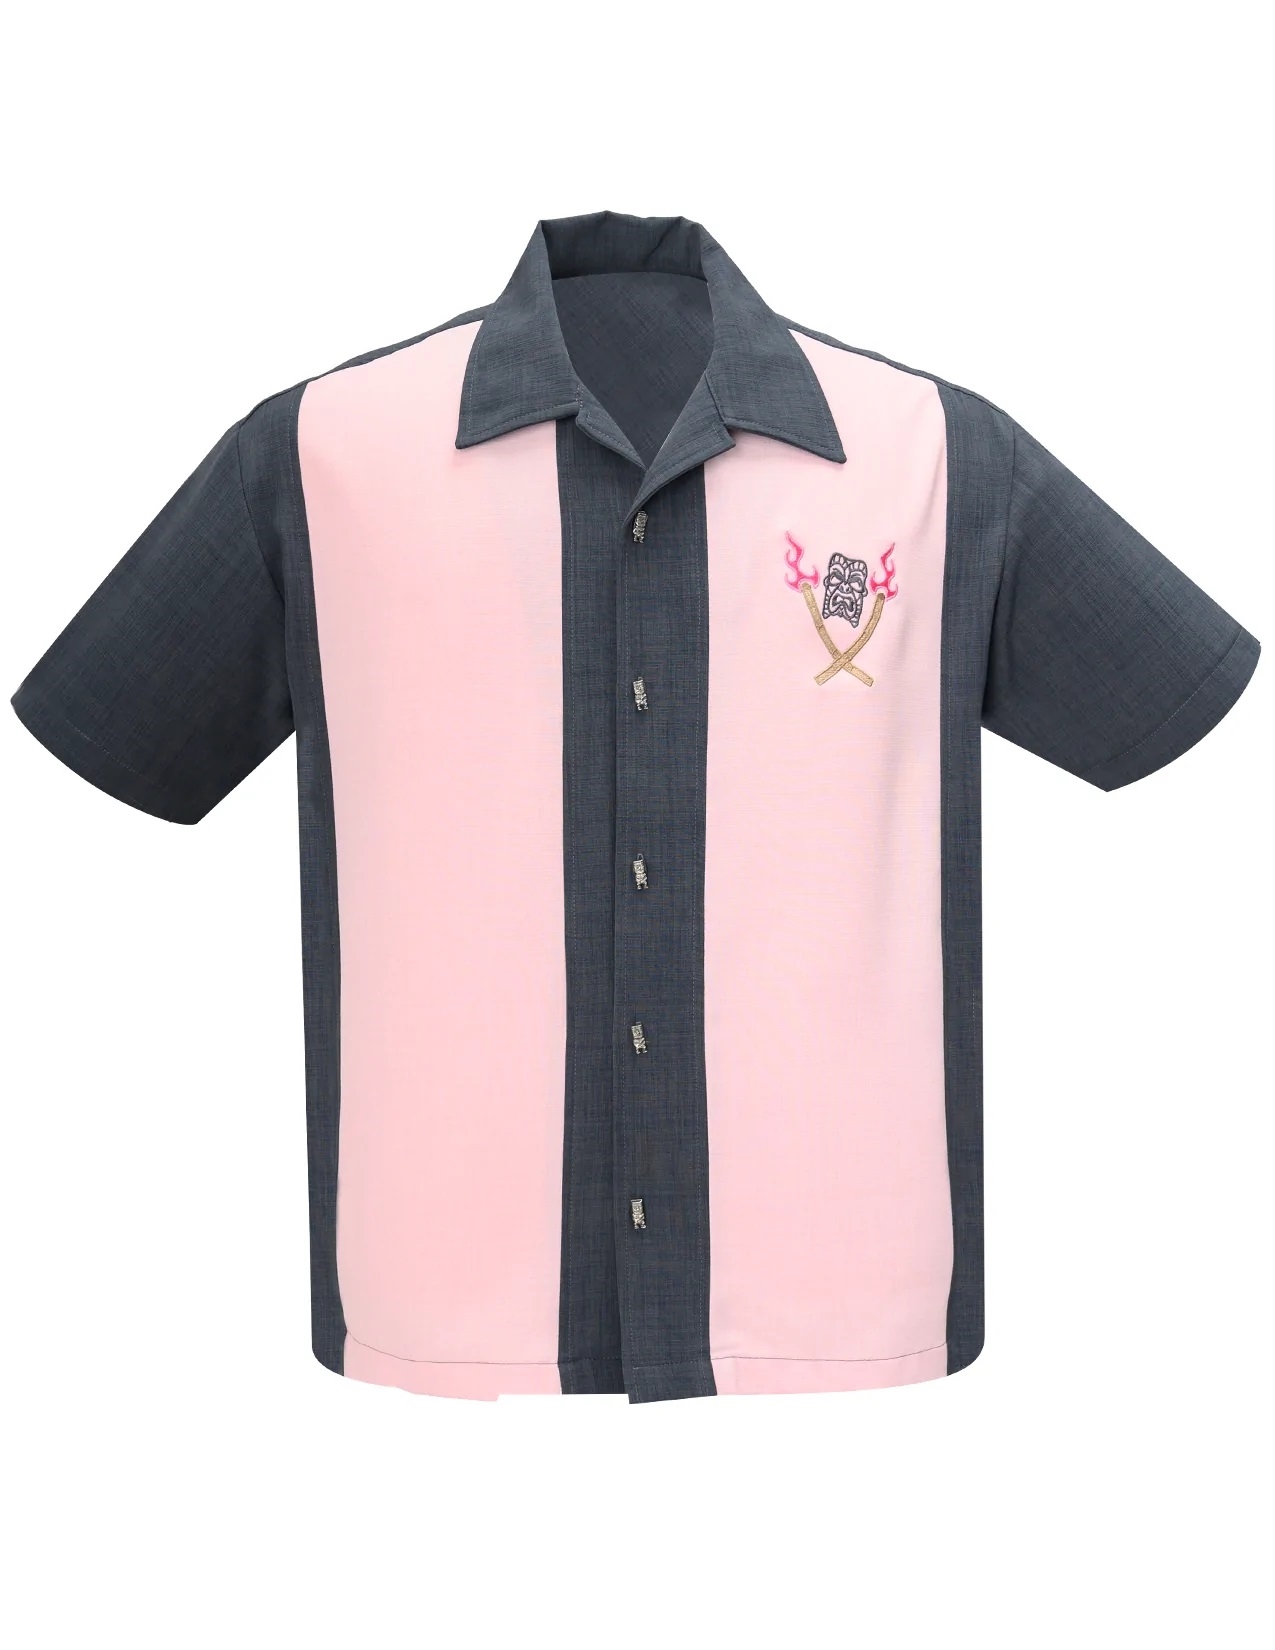 århundrede Fremmedgøre system Kortærmet skjorte: bowling shirt - Steady Clothing - Tropical Itch Bowling